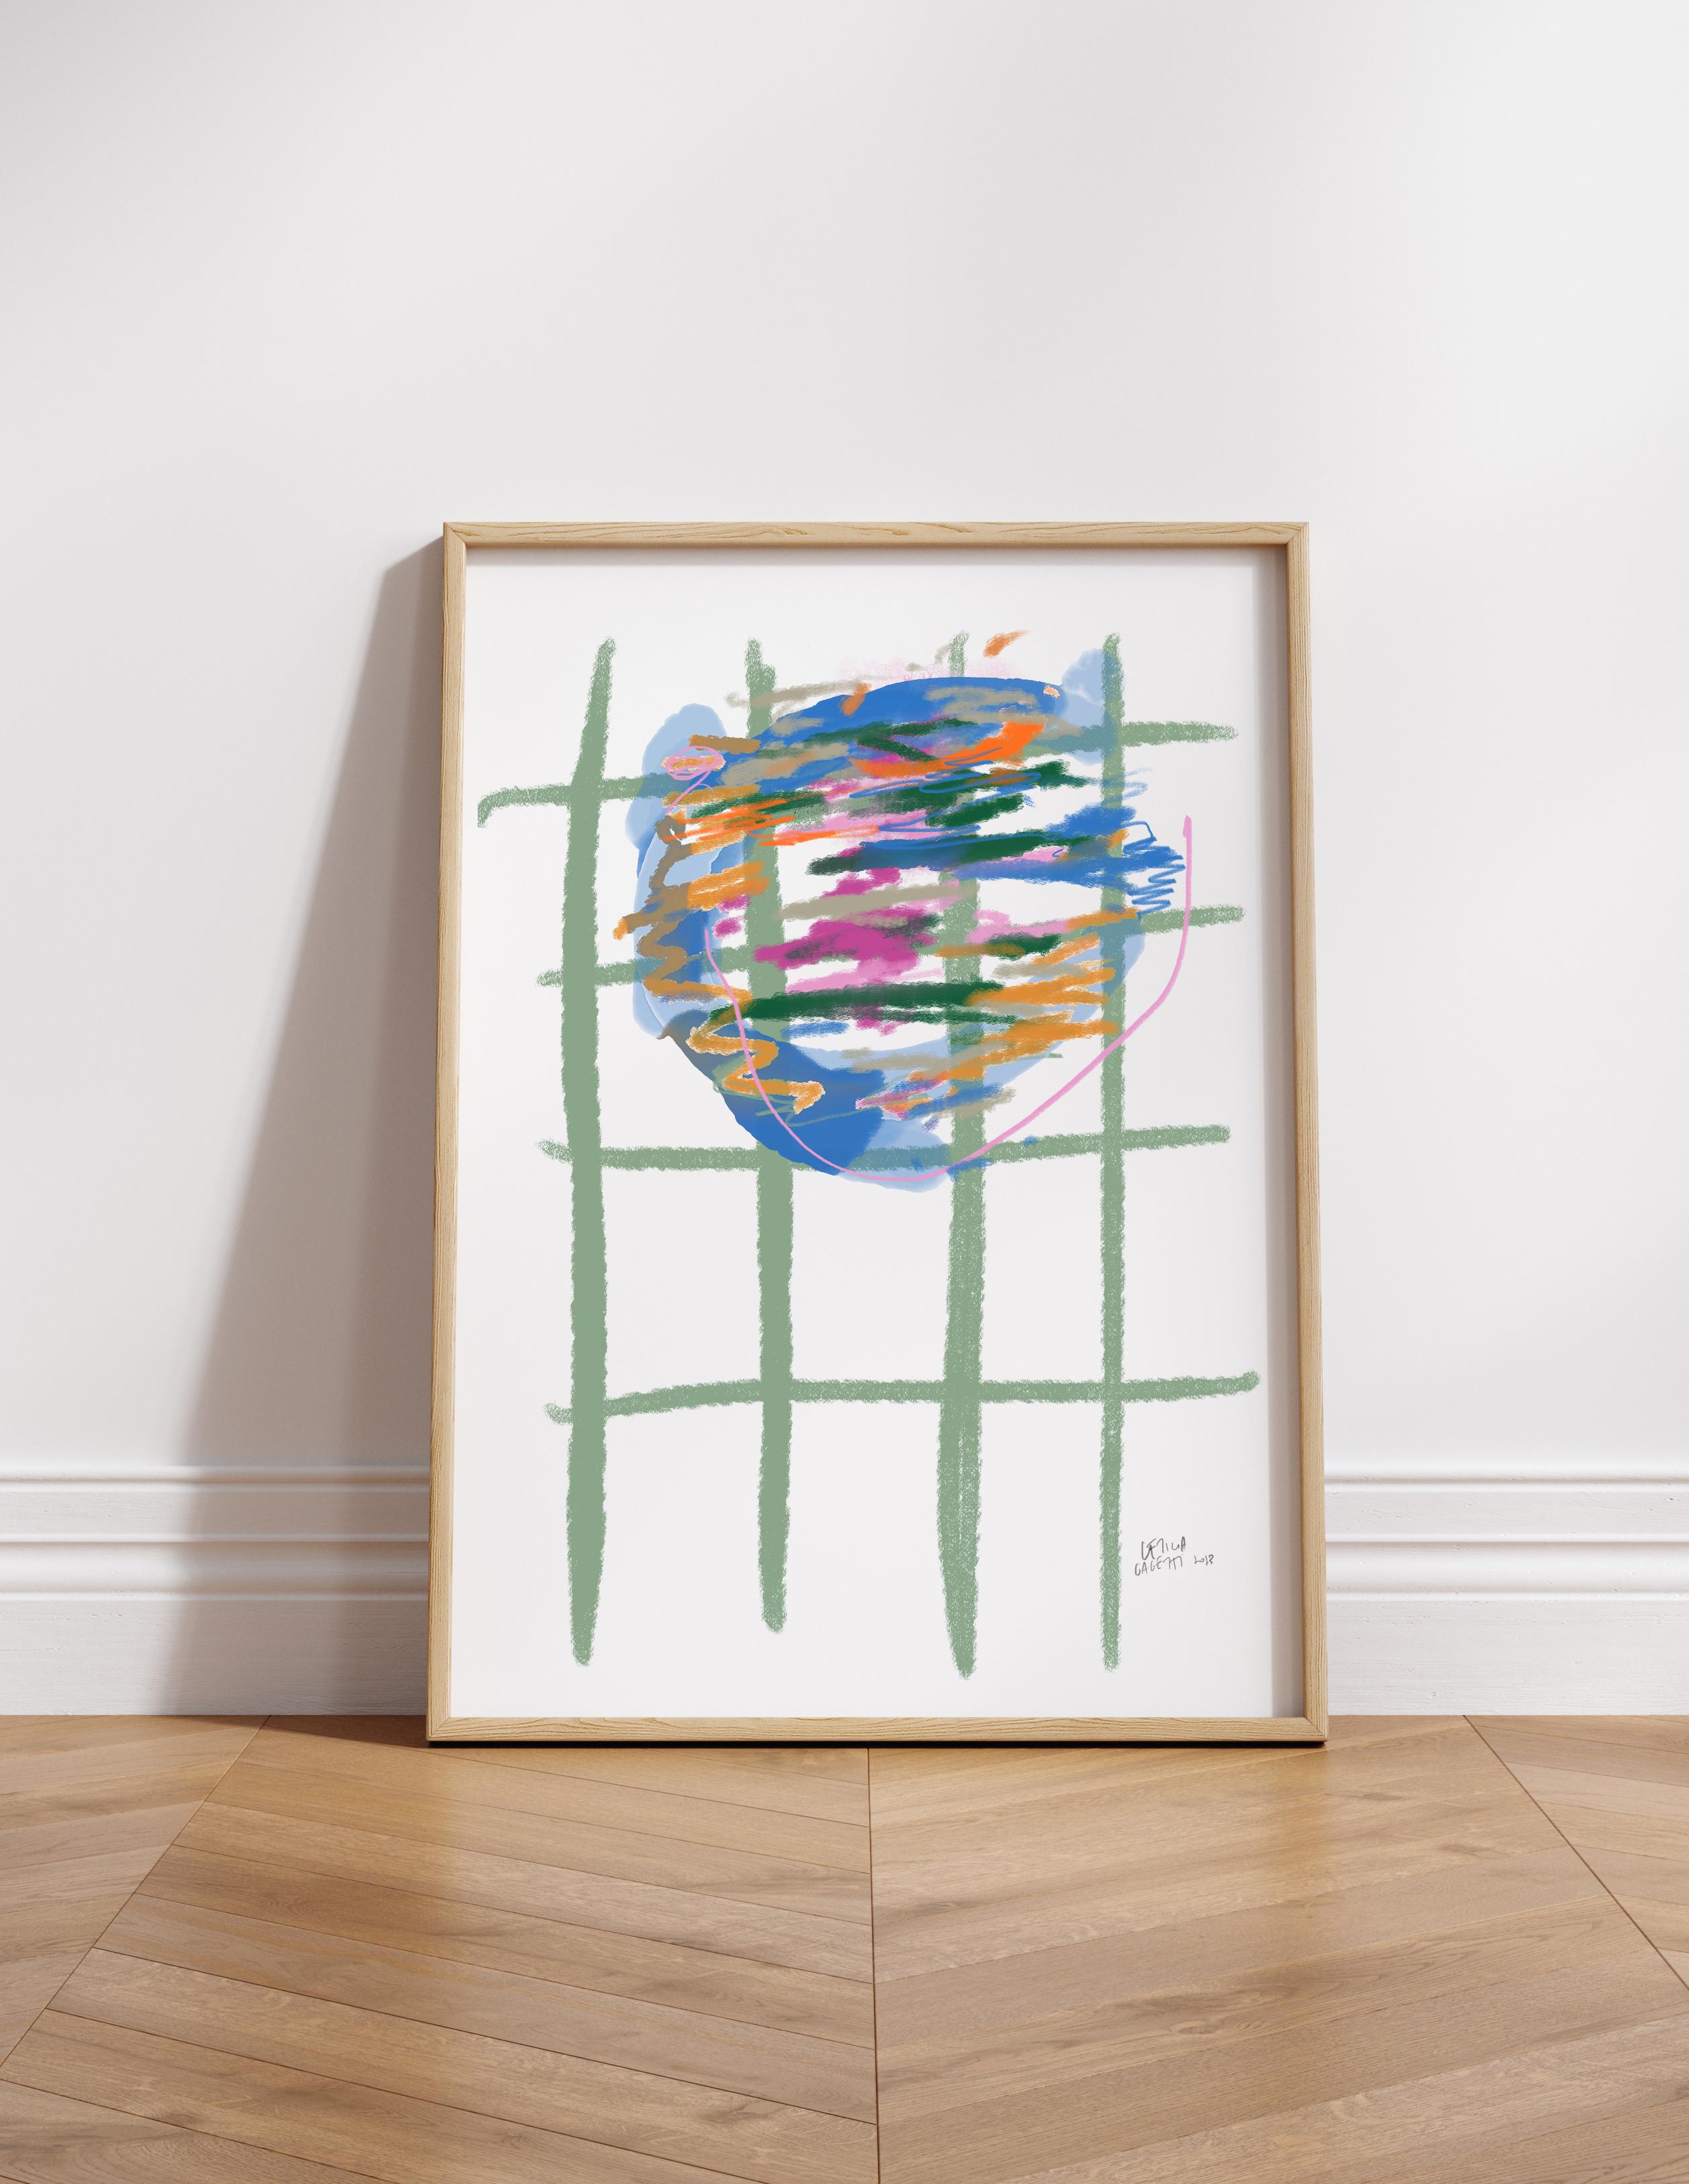 Giclée-Kunstdruck von Leticia Gagetti, gedruckt auf hochwertigem 260g-Papier mit einer matten Oberfläche, die lebendige und satte Farben garantiert.

Dieser Kunstdruck wurde im Giclée-Verfahren auf Papier in Museumsqualität gedruckt und verwendet